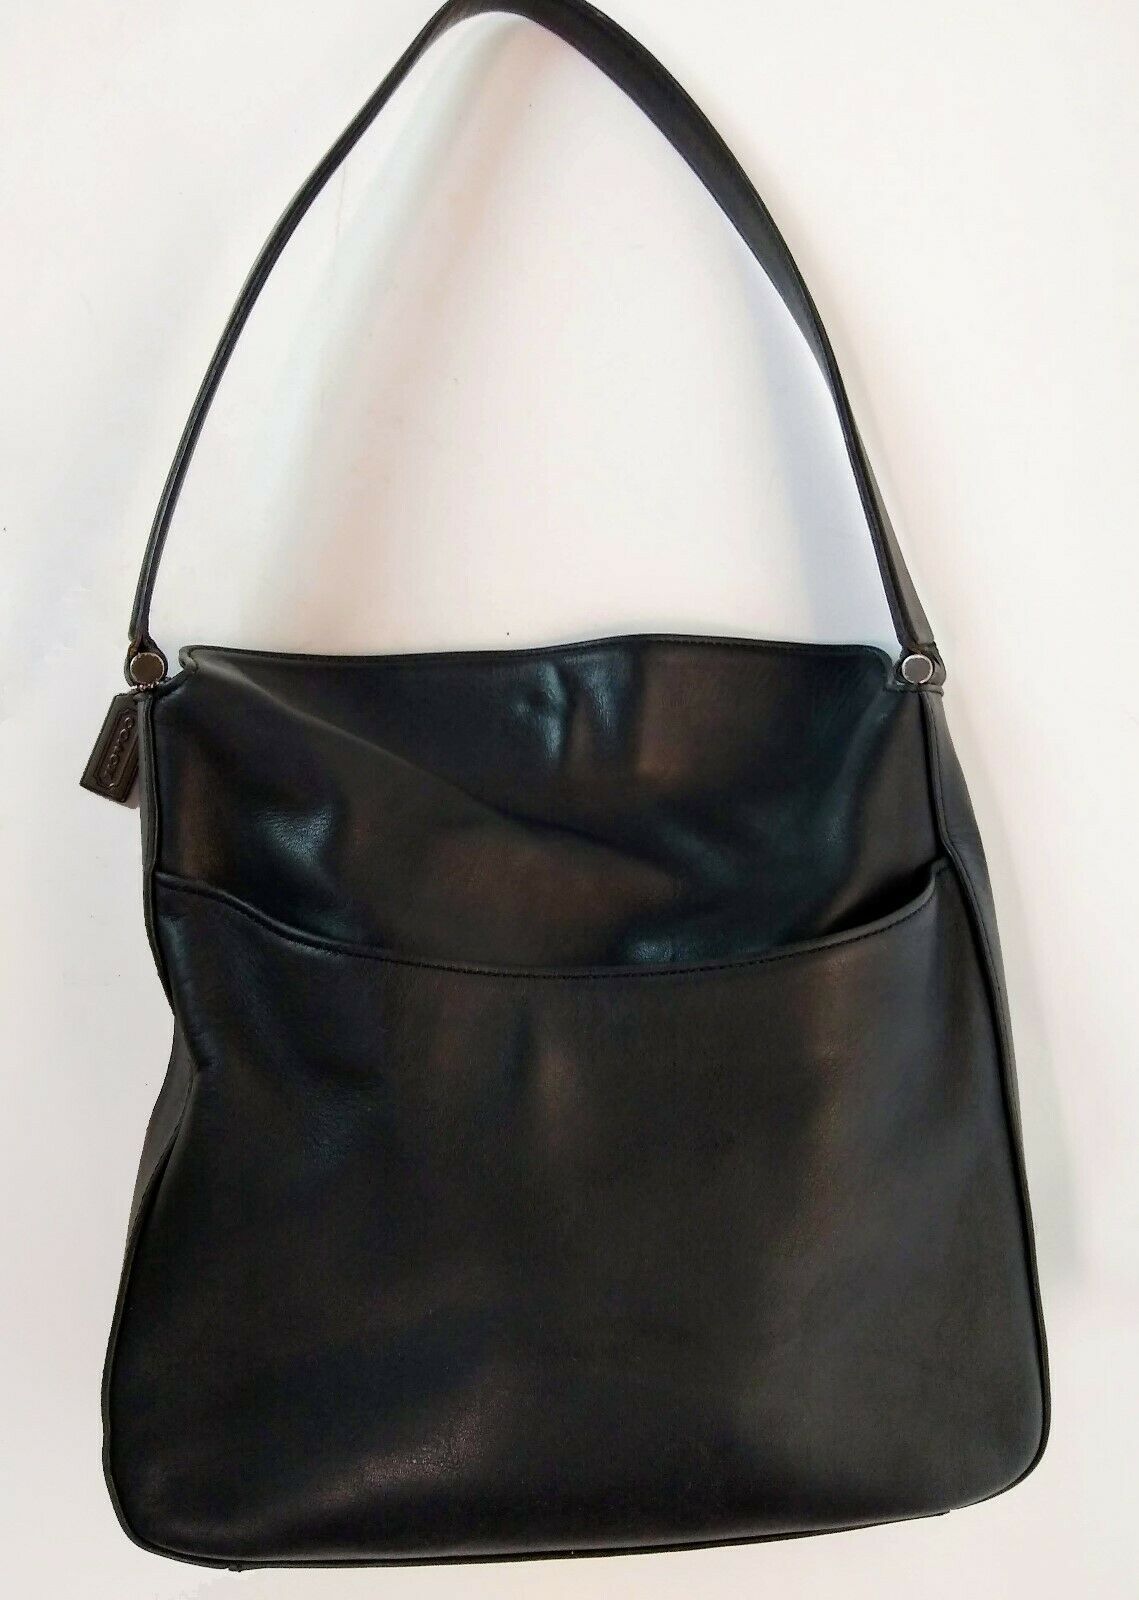 Vintage Coach Legacy Black Leather Slouch Hobo Shoulder Bag Purse 9180 ...